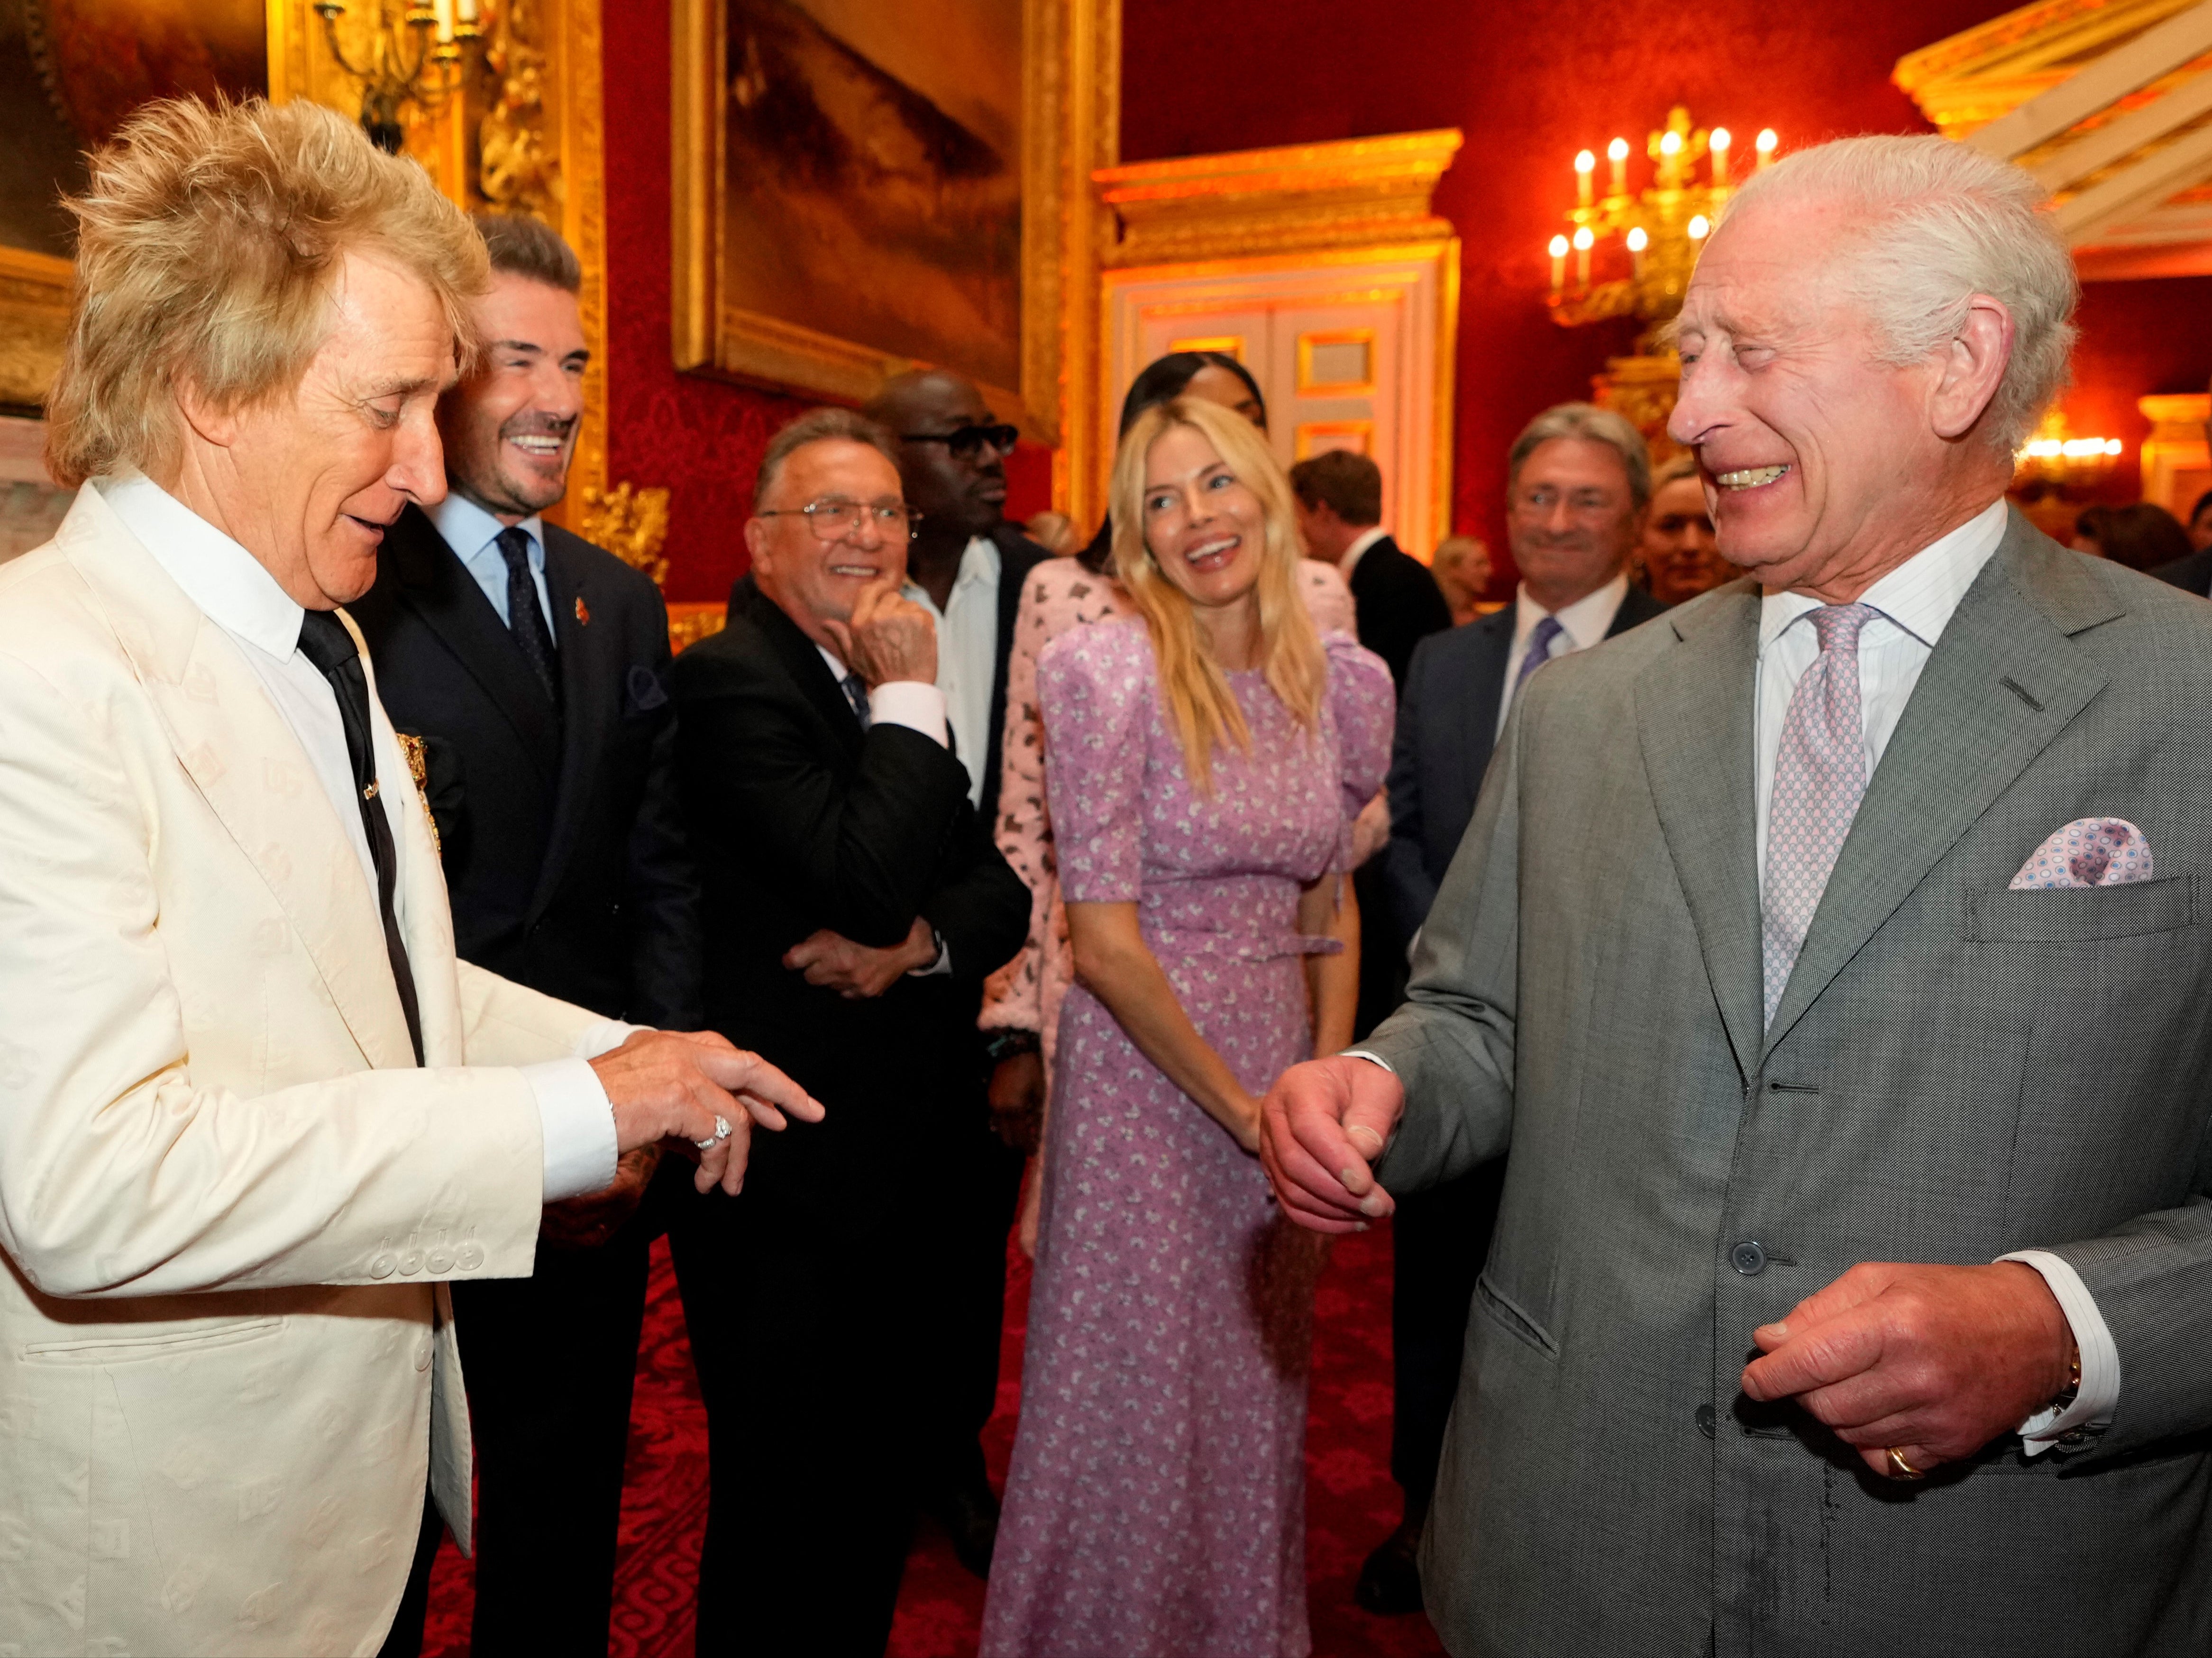 يبتسم الملك تشارلز وهو يتحدث إلى المغني البريطاني رود ستيوارت، واللاعب الإنجليزي السابق ديفيد بيكهام، والممثلة البريطانية سيينا ميلر.